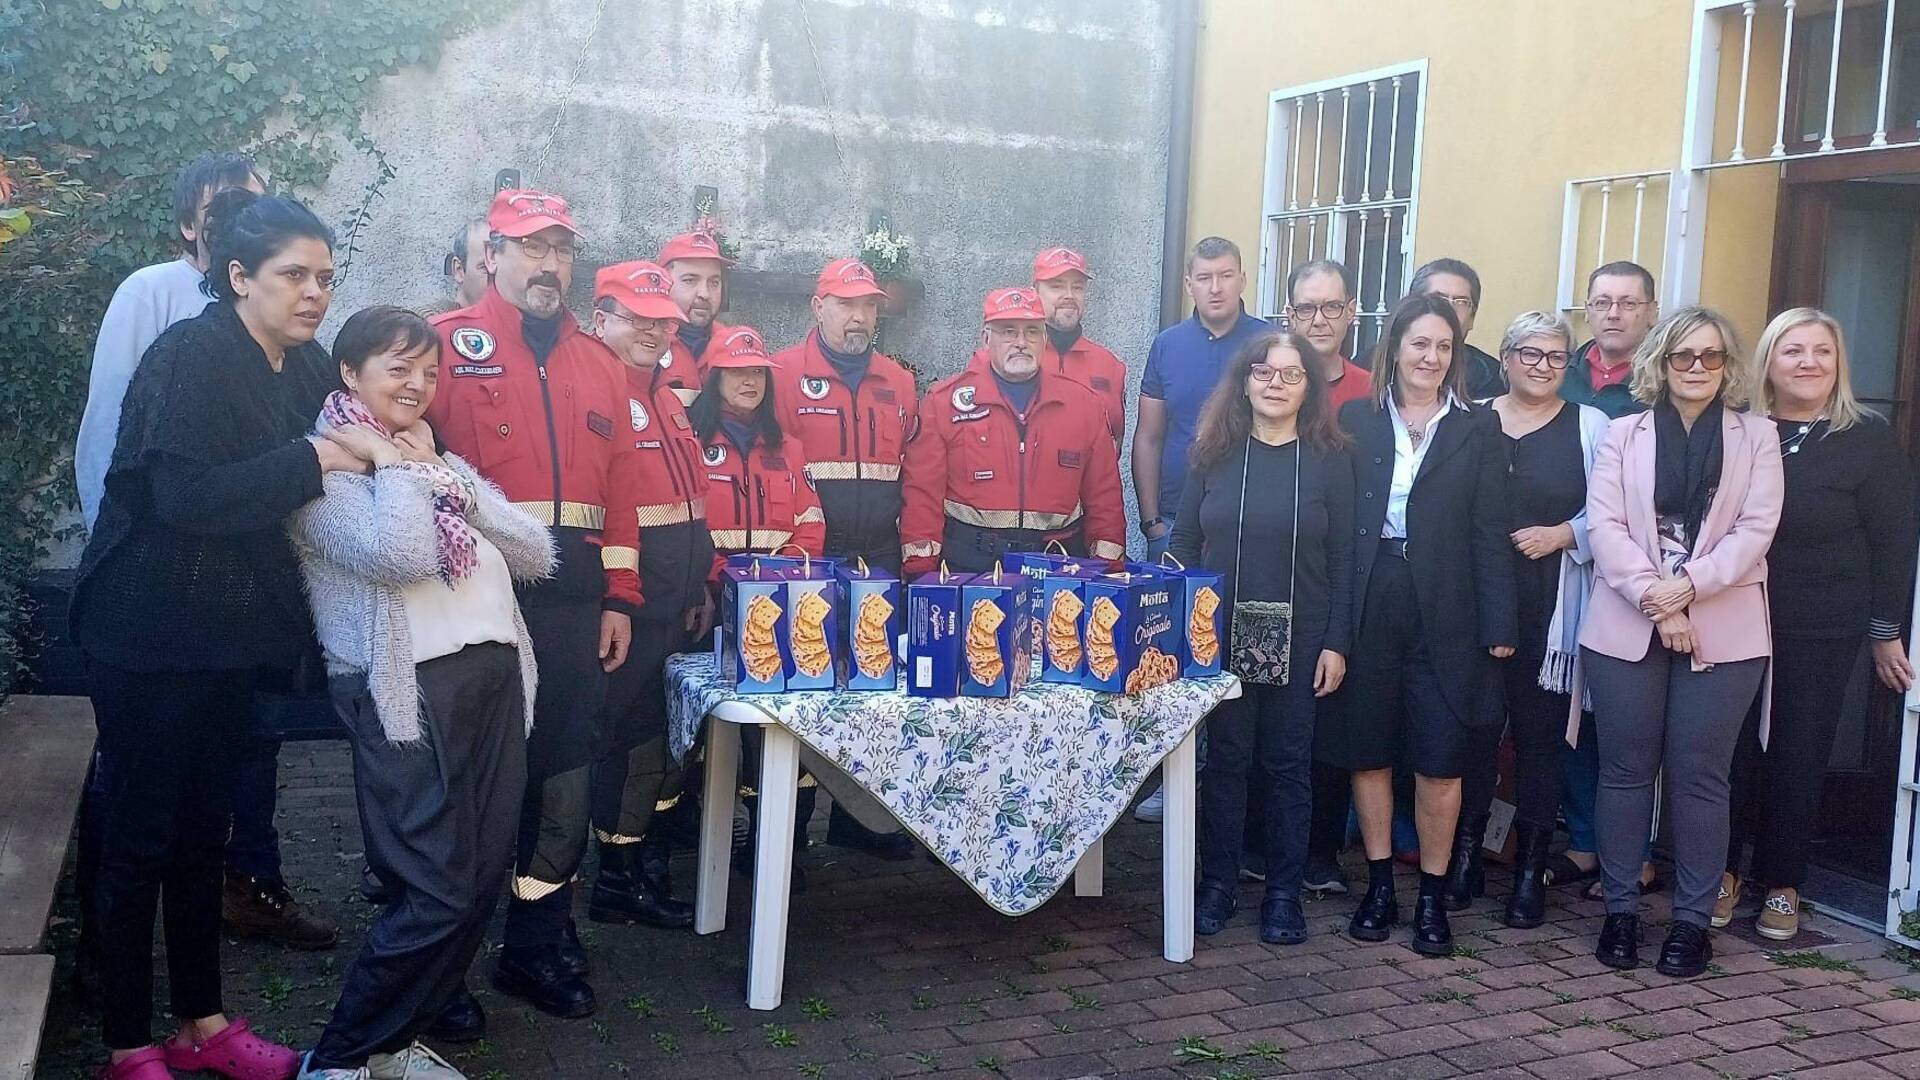 Saronno, l’associazione nazionale carabinieri dona colombe ai pazienti della struttura psichiatrica residenziale